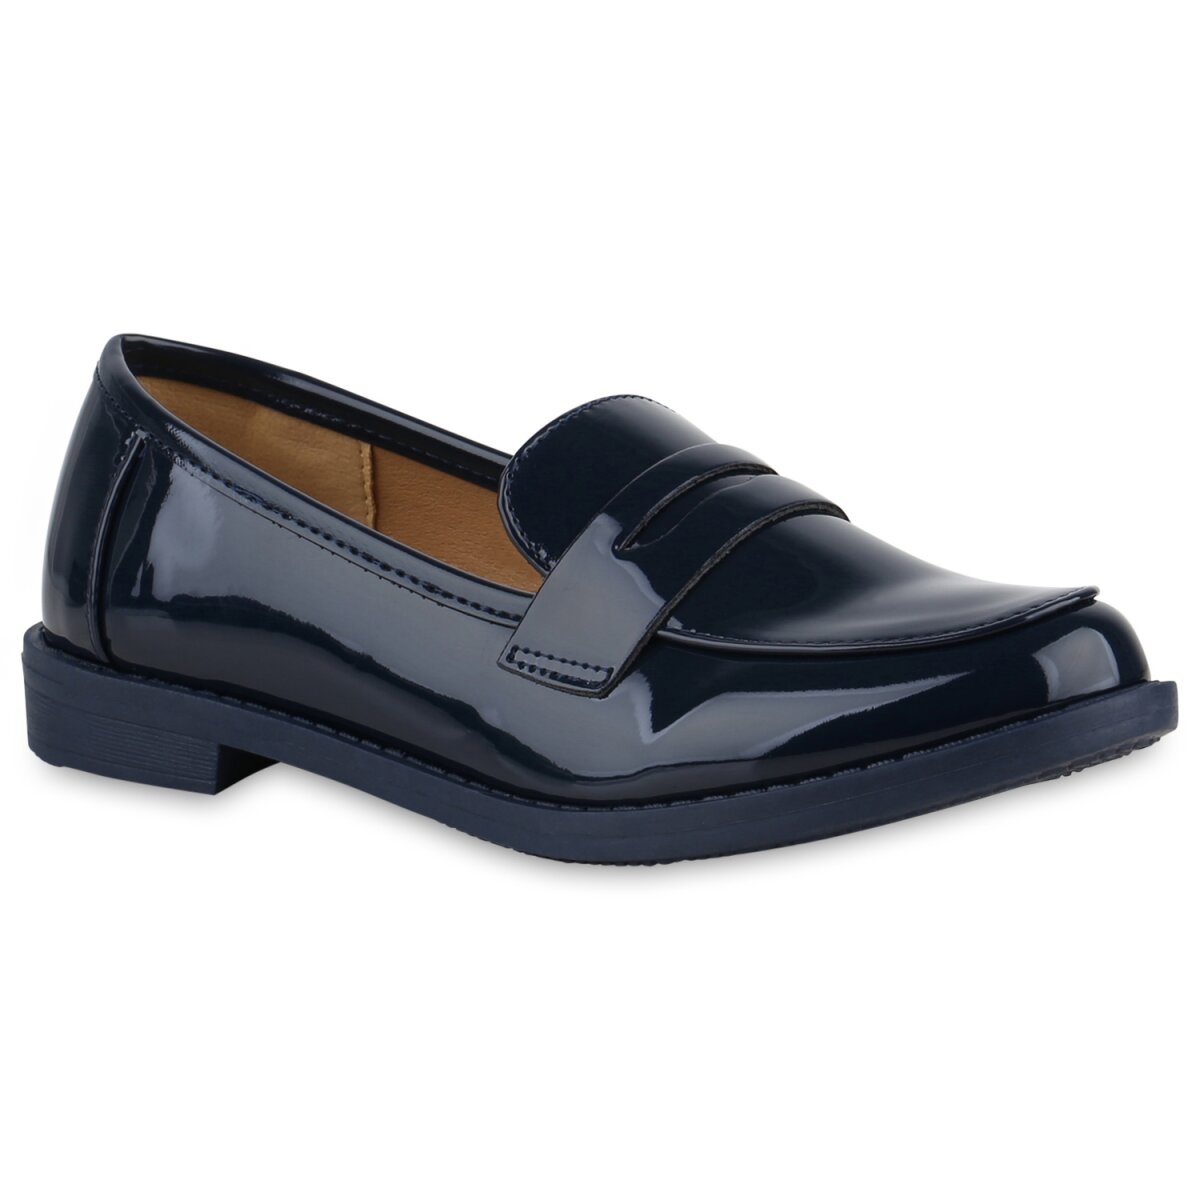 Damen Loafers in Schwarz Lack 840657 online kaufen